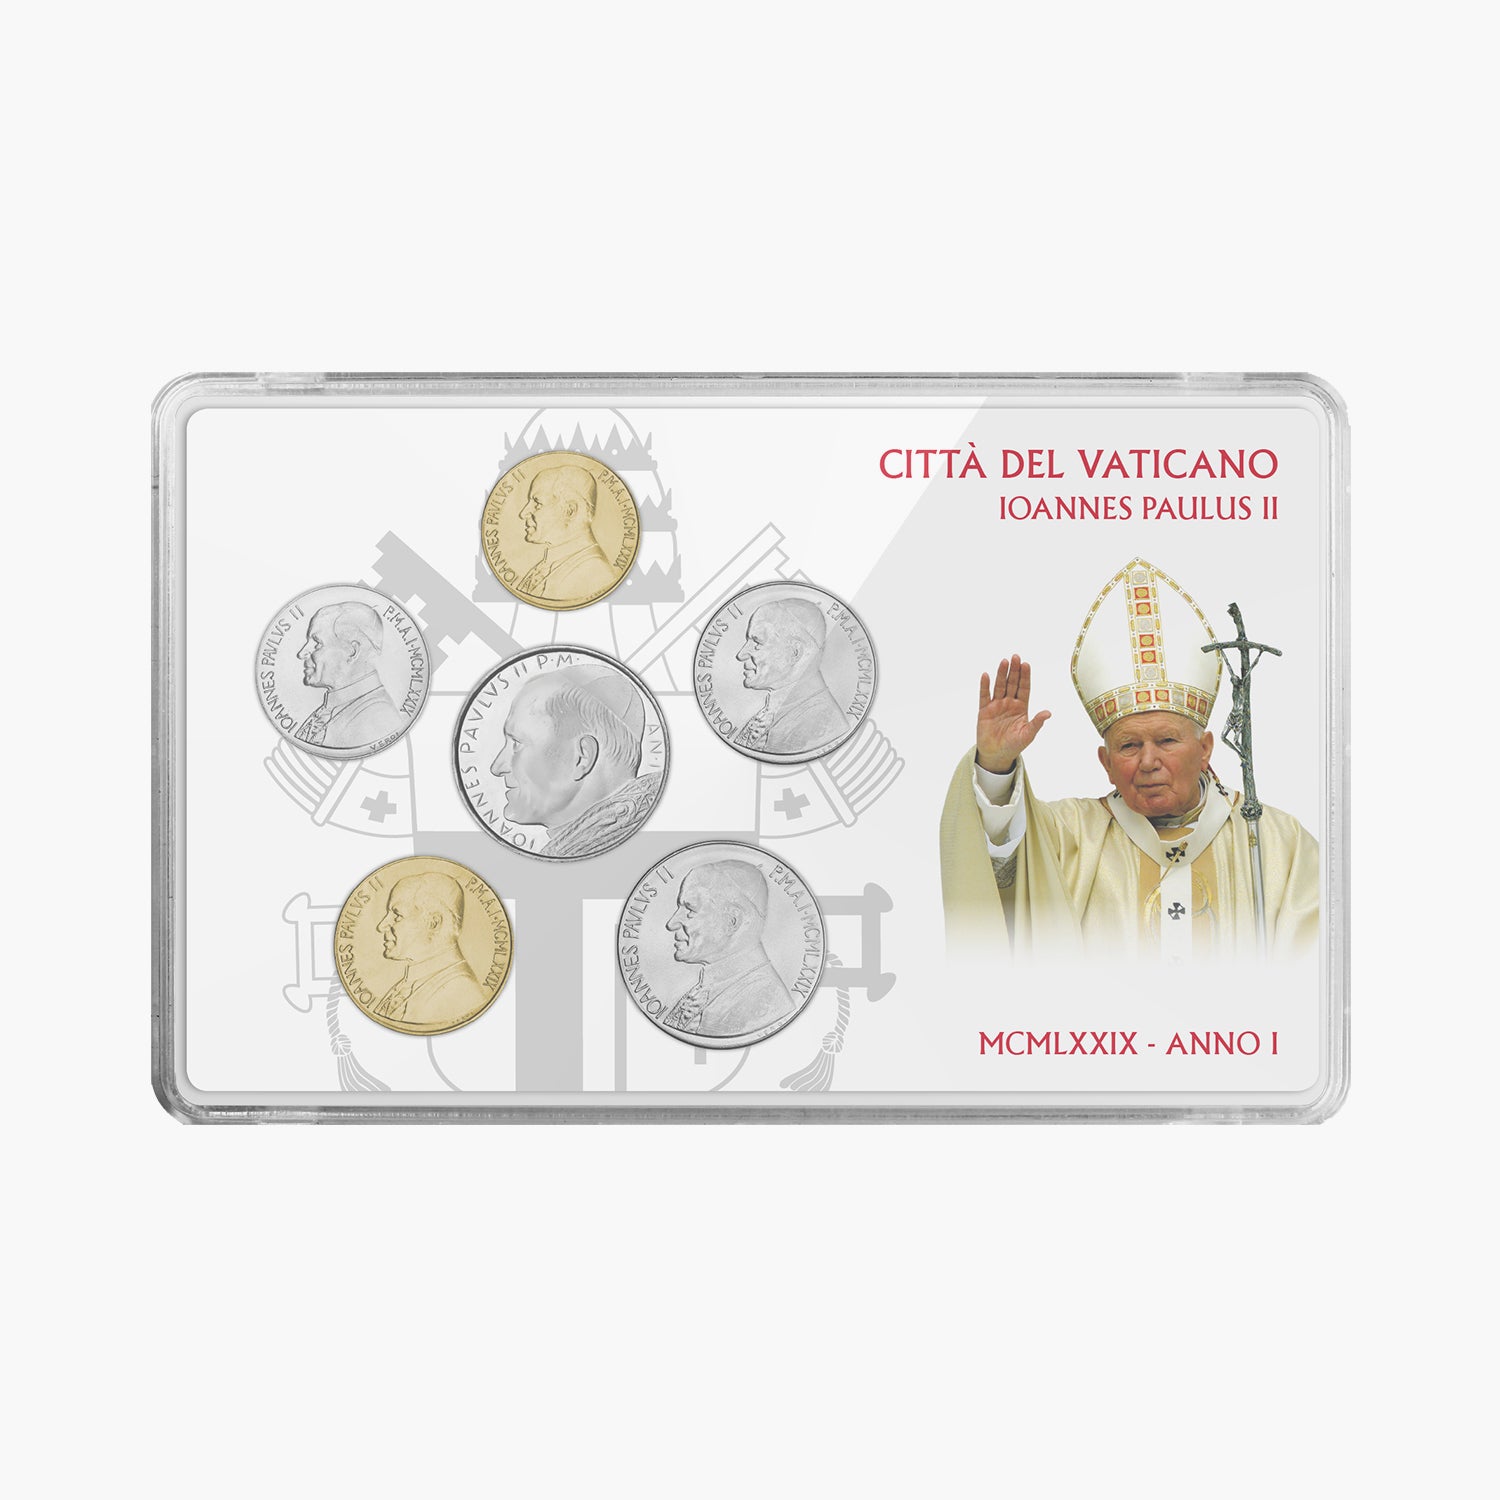 Ensemble complet de pièces de monnaie de la première émission du pape Jean-Paul II